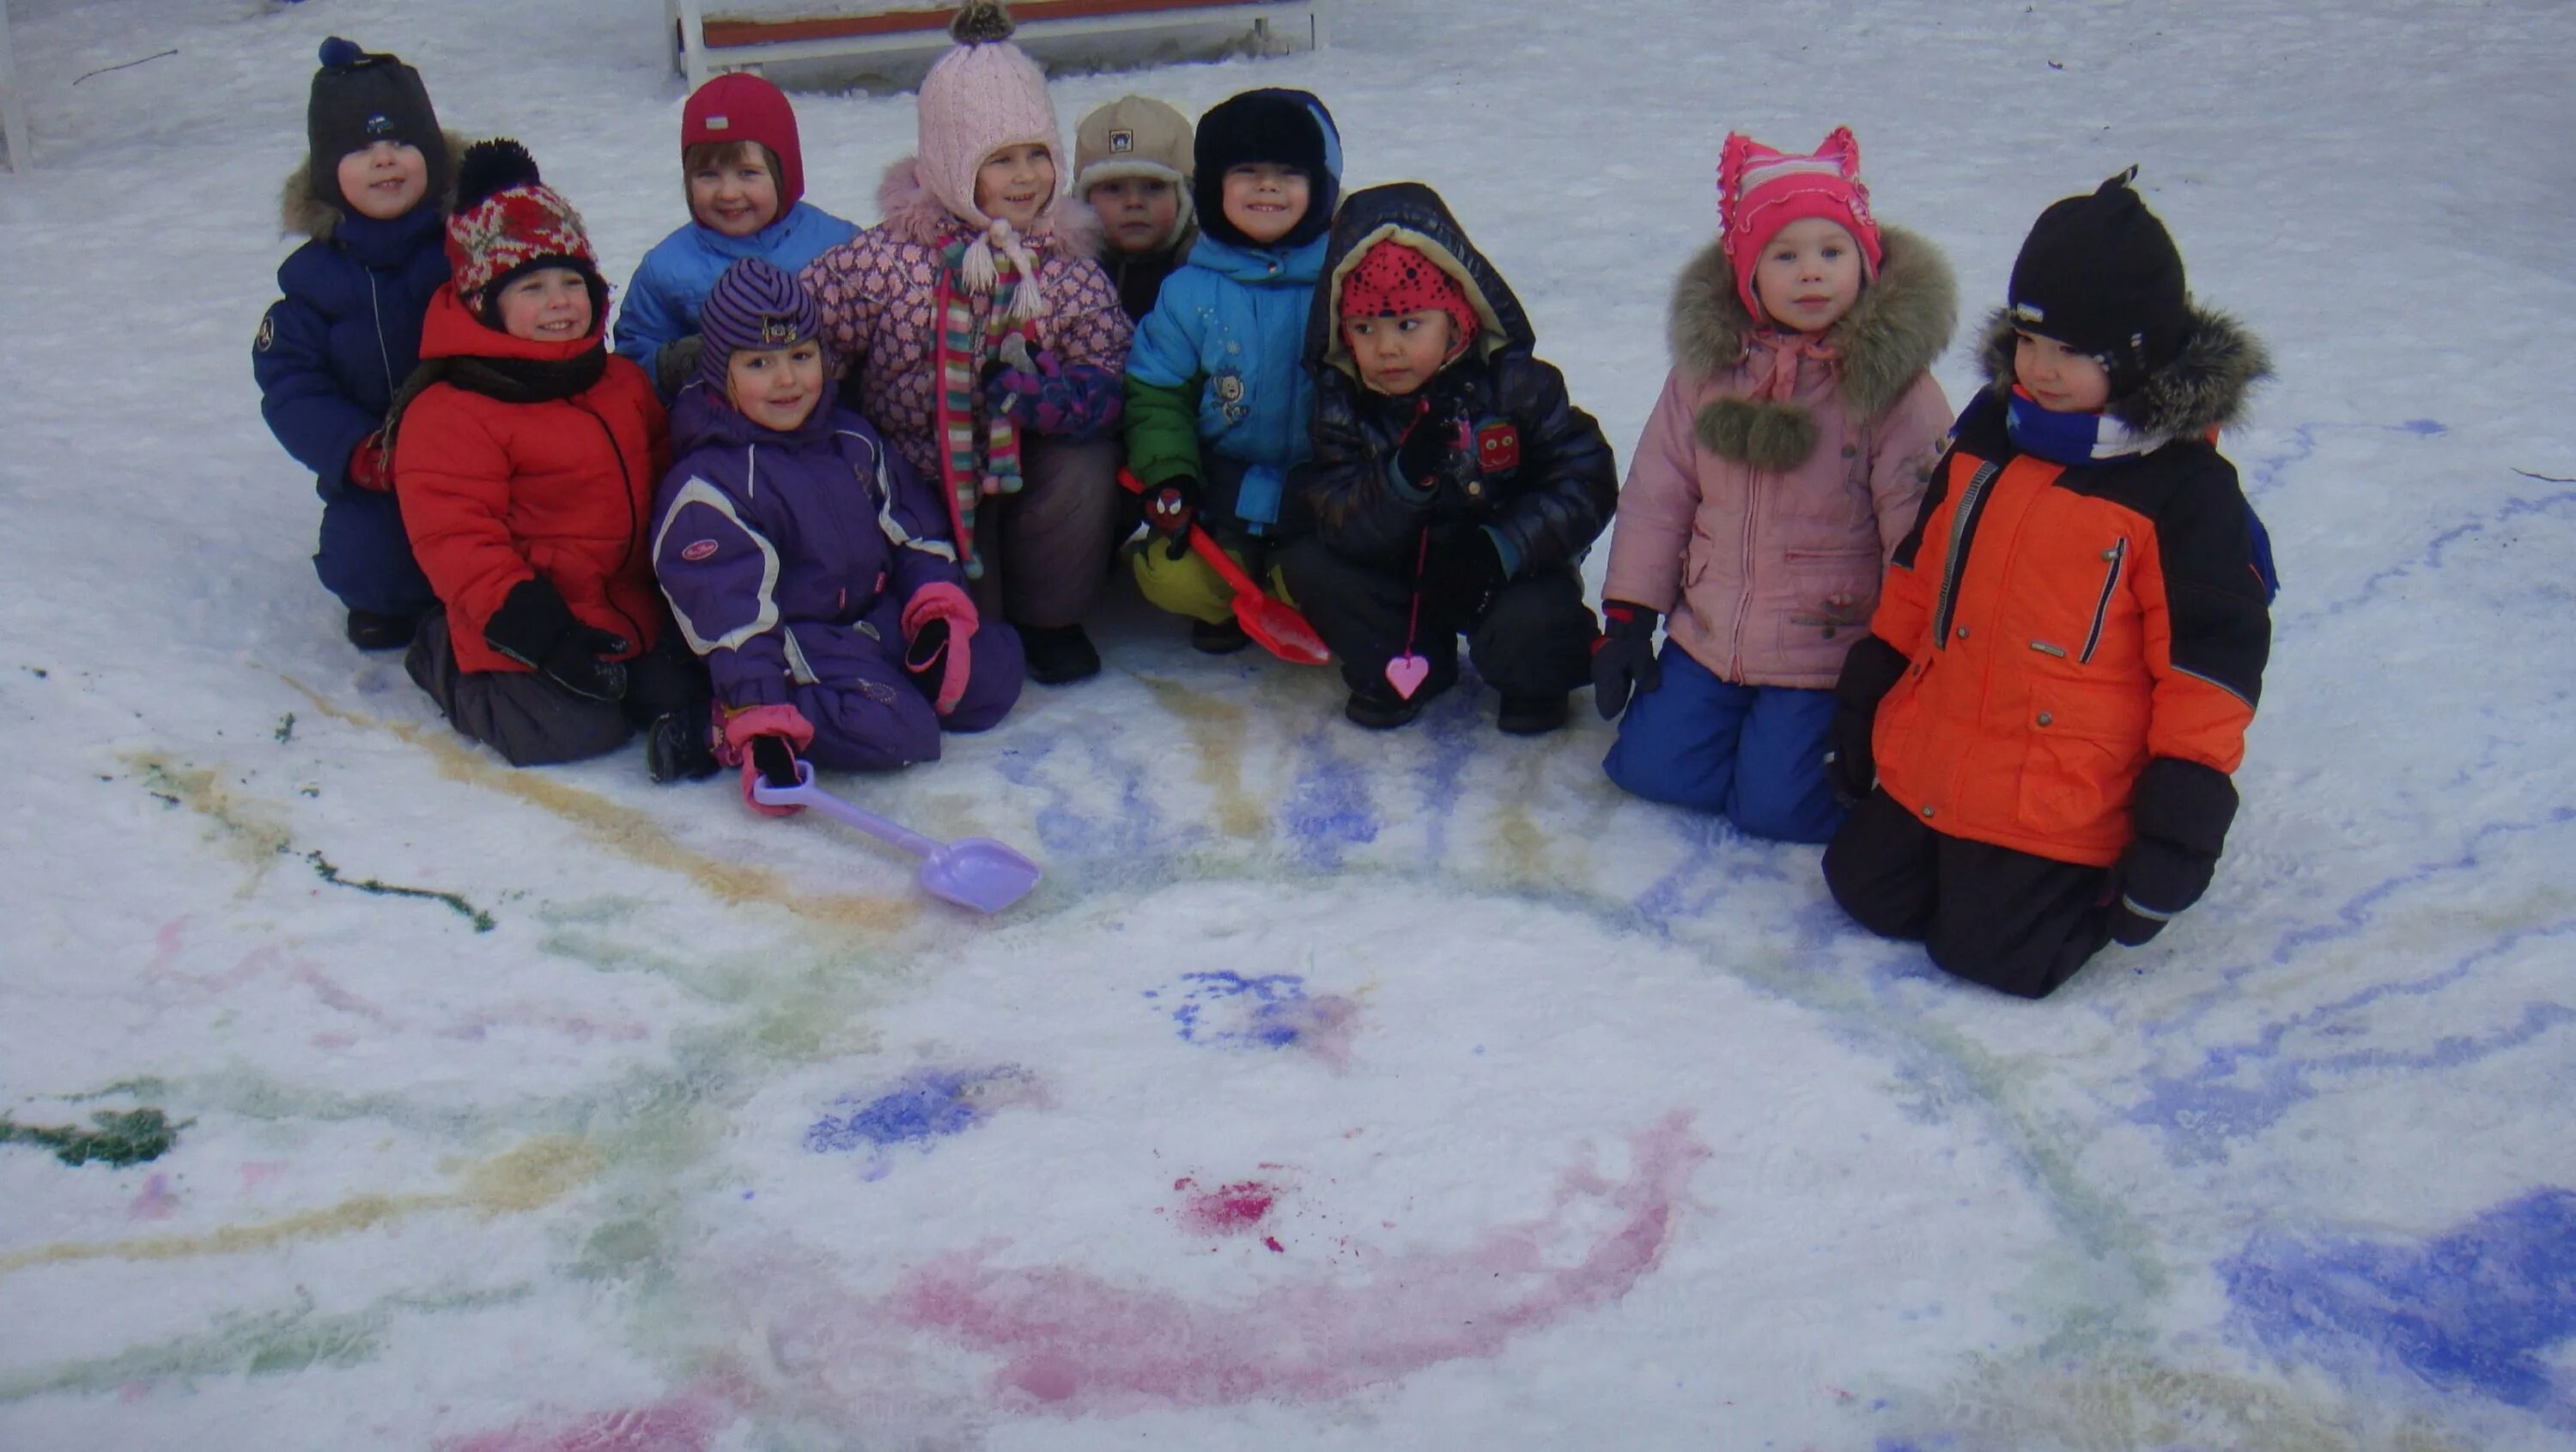 Развлечения зимние в детском саду. Зимние забавы для детей в детском саду. Зимние развлечения для детей в детском саду. Зимние забавы для детей в детском саду на улице.